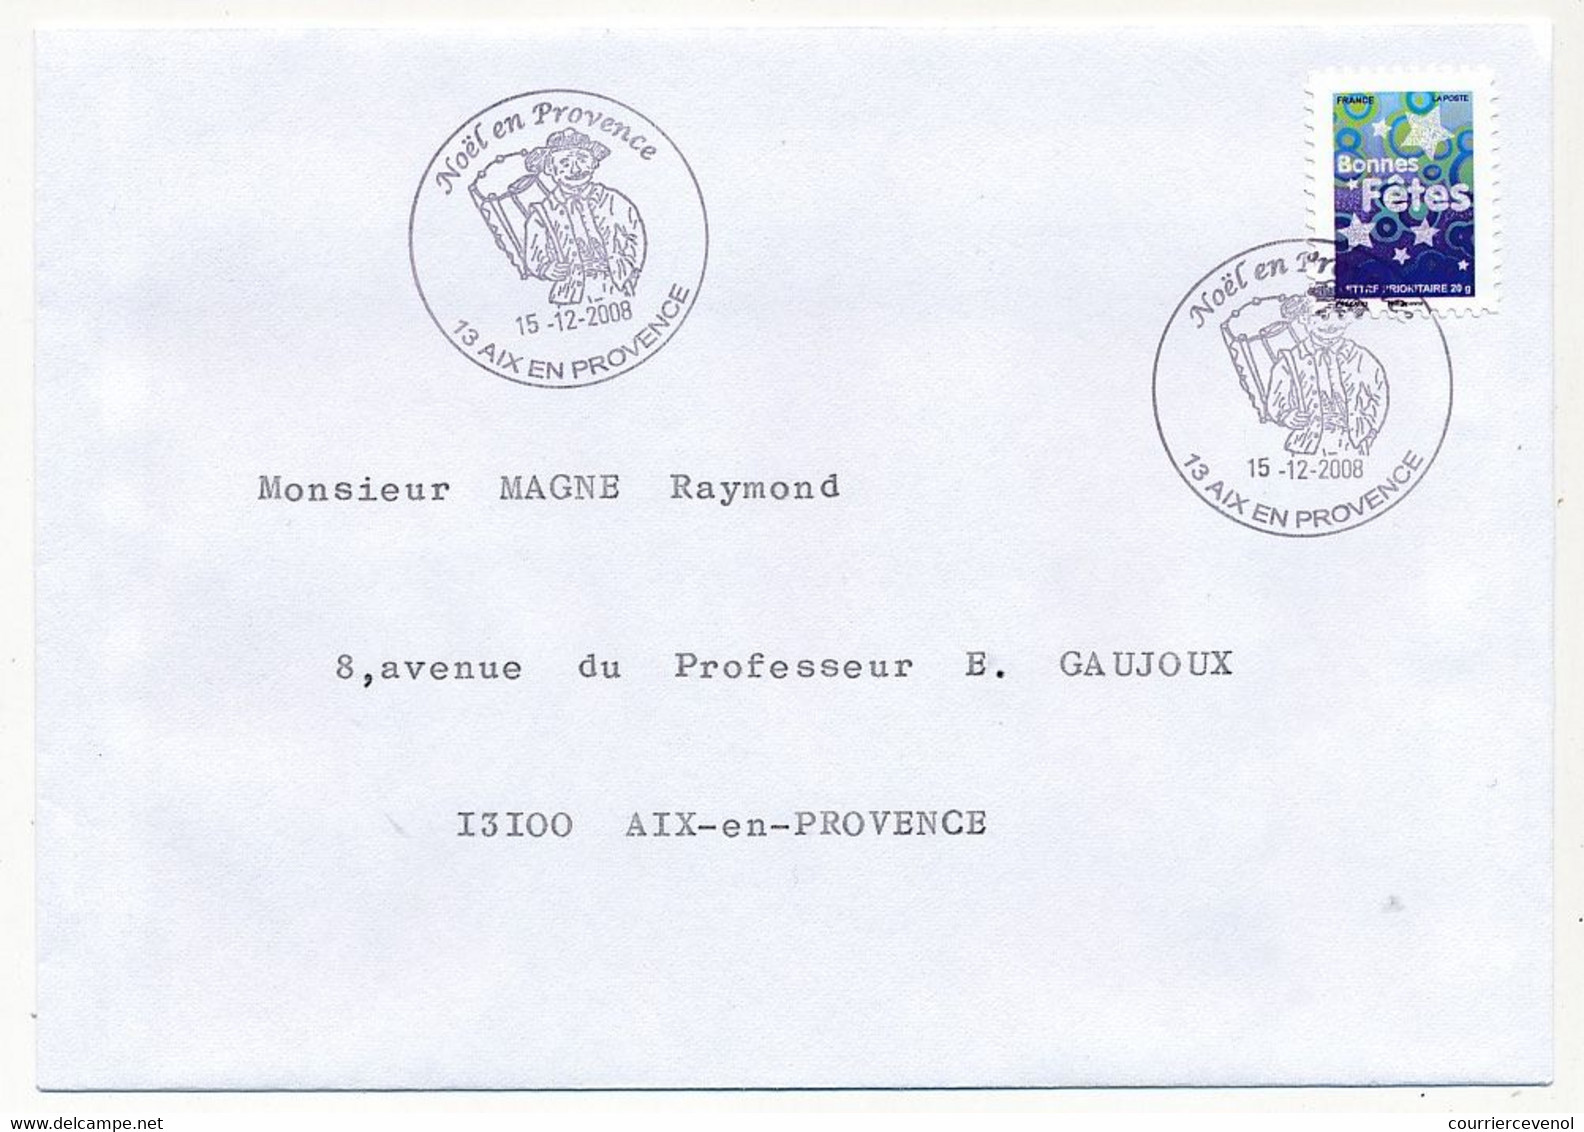 FRANCE - 6 Enveloppes Série Bonnes Fêtes 2008 - Oblit Temporaire Noël En Provence - Aix En Provence - 15/12/2008 - Briefe U. Dokumente